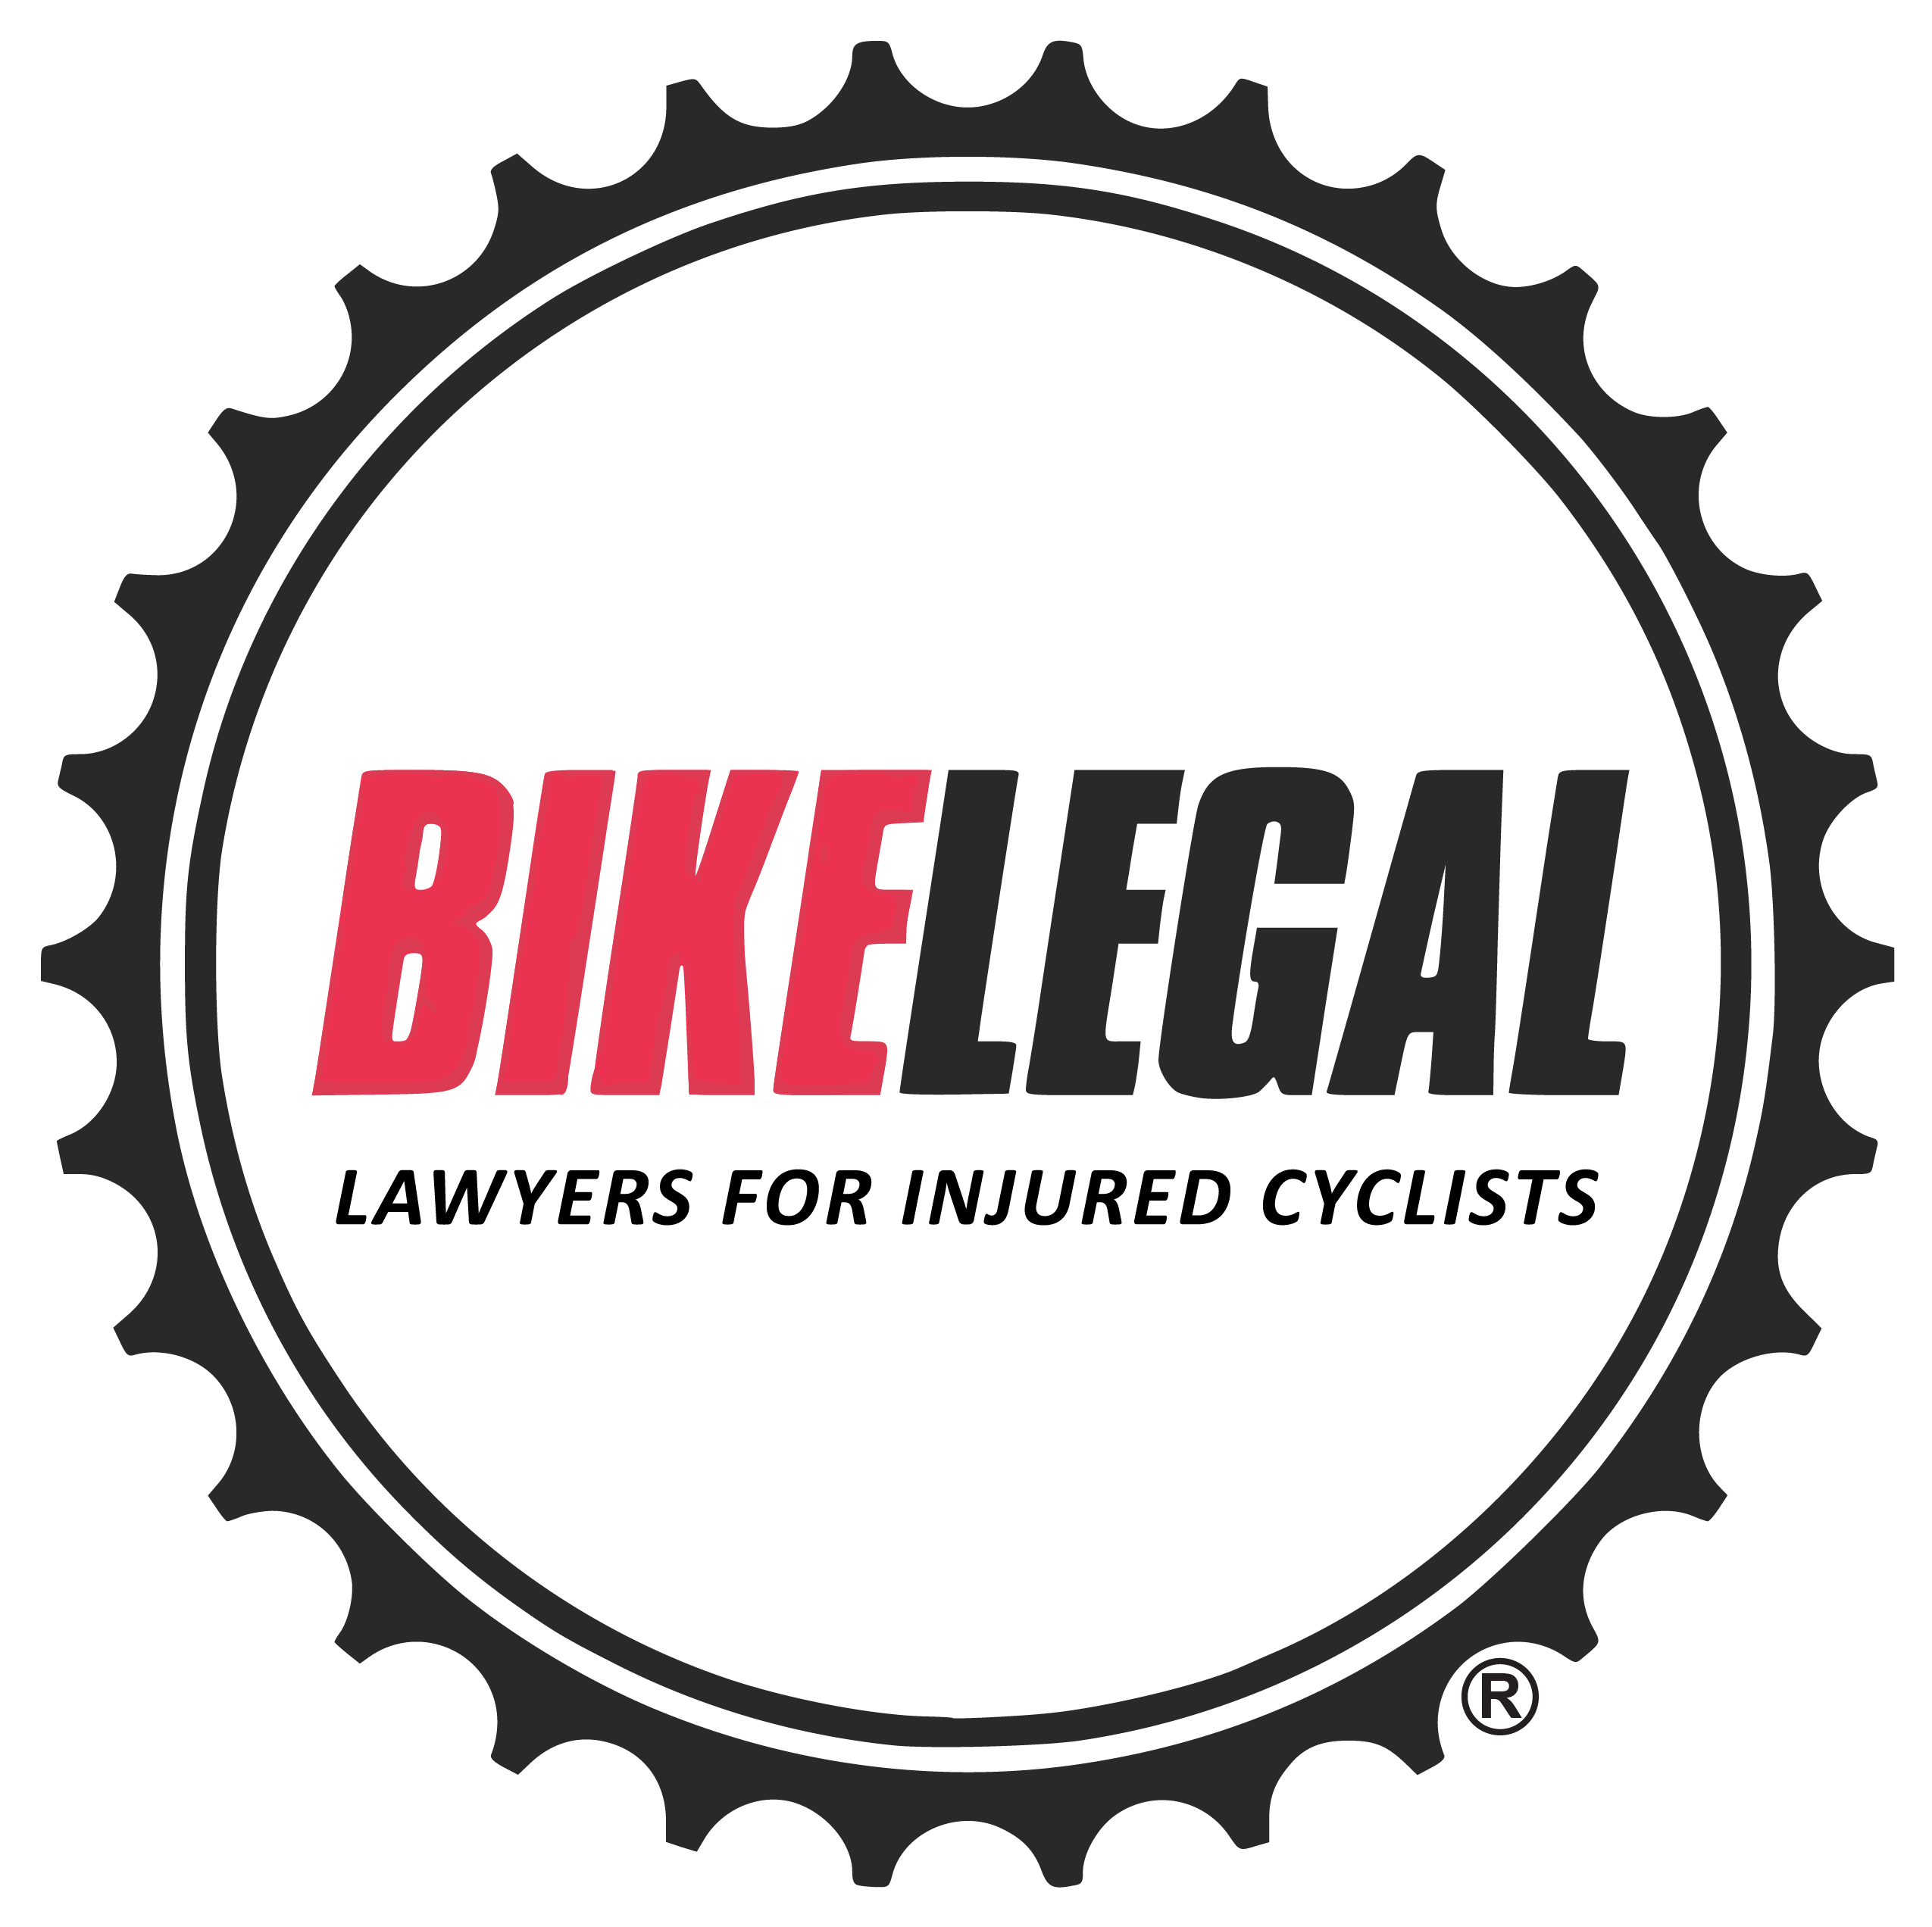 BikeLegal Firm